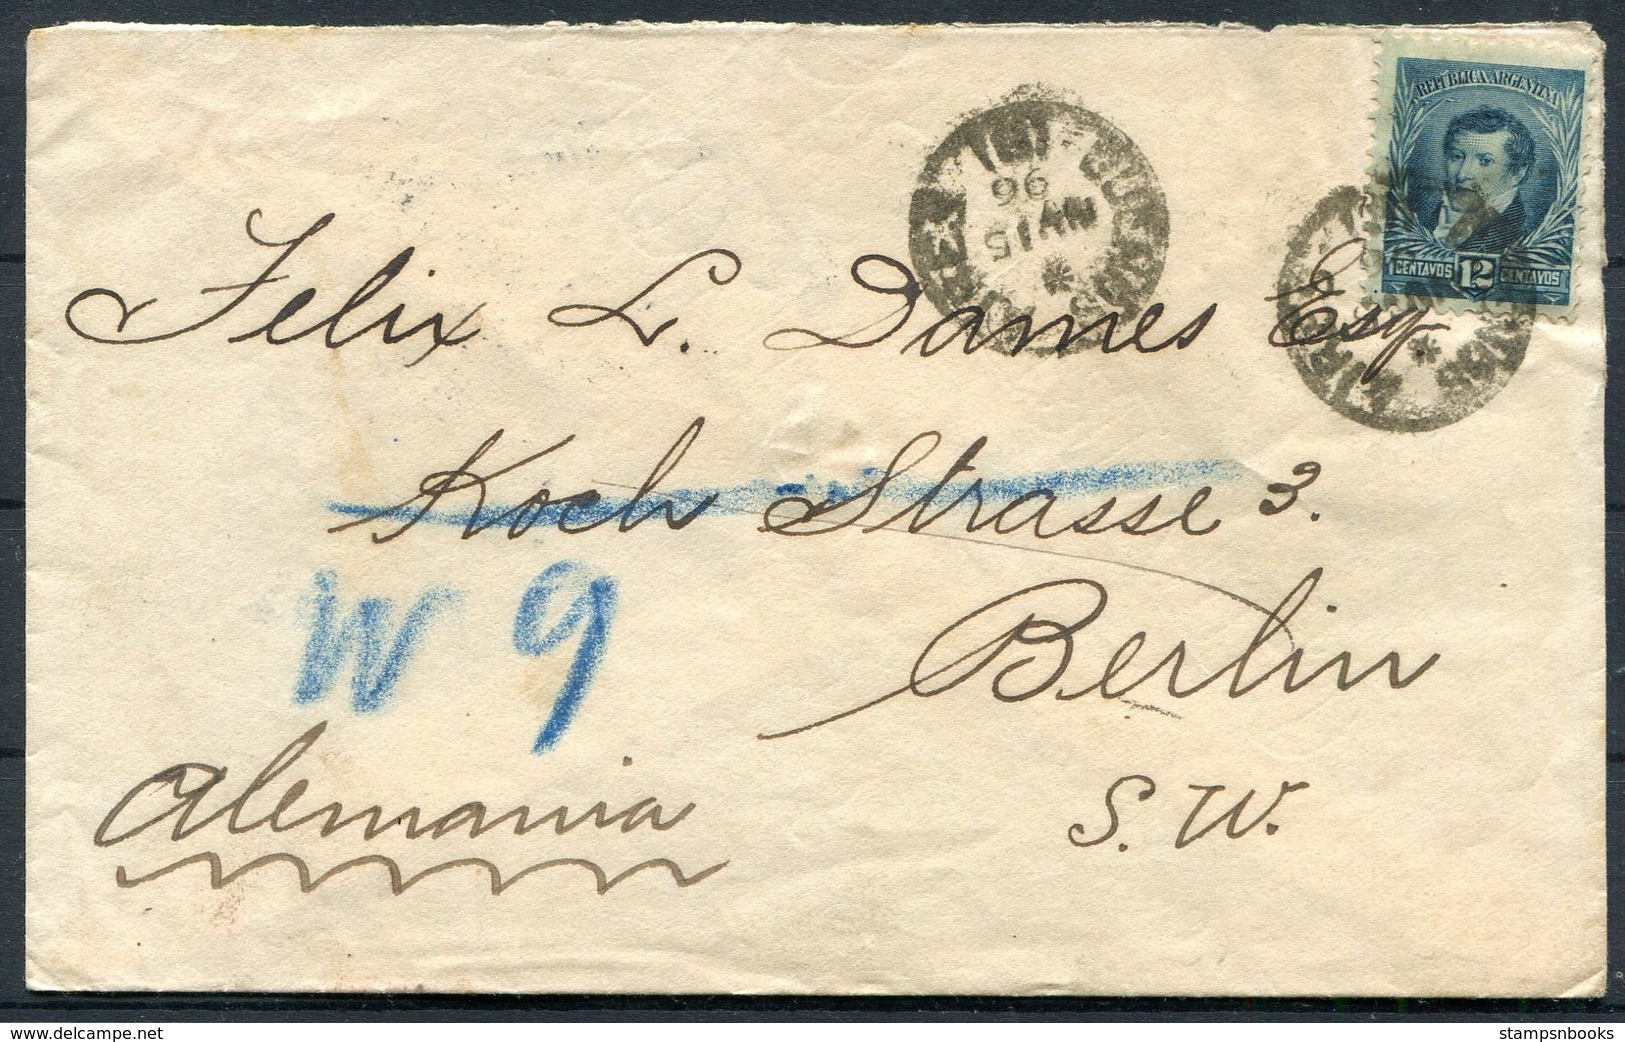 1896 Argentina Bank Cover. Buenos Aires, El Banco De Londres Rio De La Plata - Berlin Germany - Covers & Documents